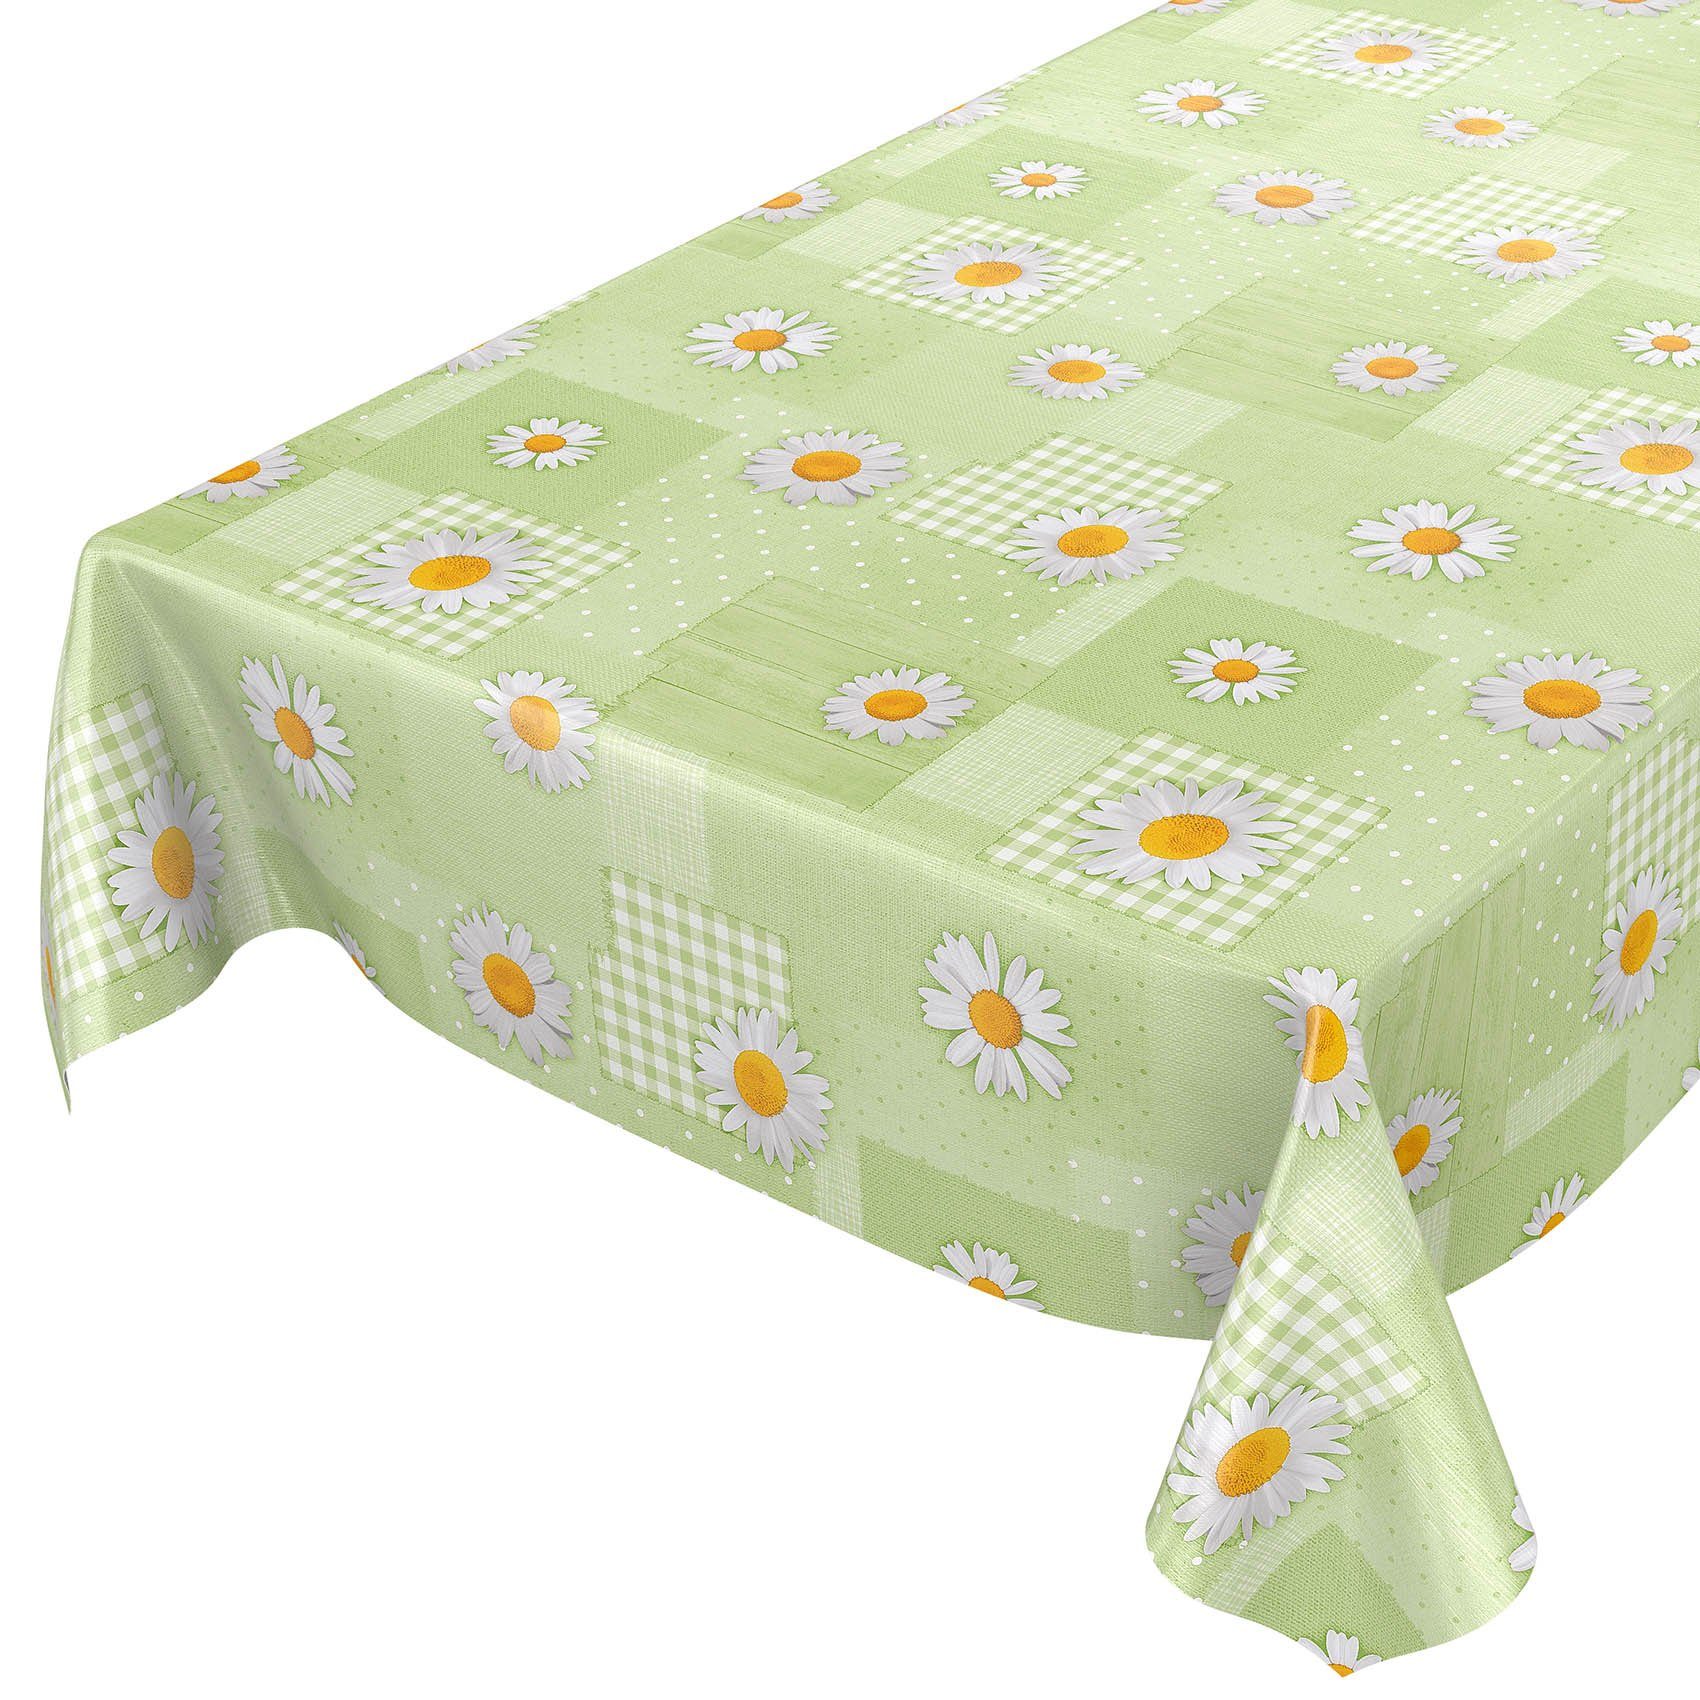 Breite ANRO Wachstuch Tischdecke Tischdecke Geprägt Robust 140 cm, Grün Wasserabweisend Blumen